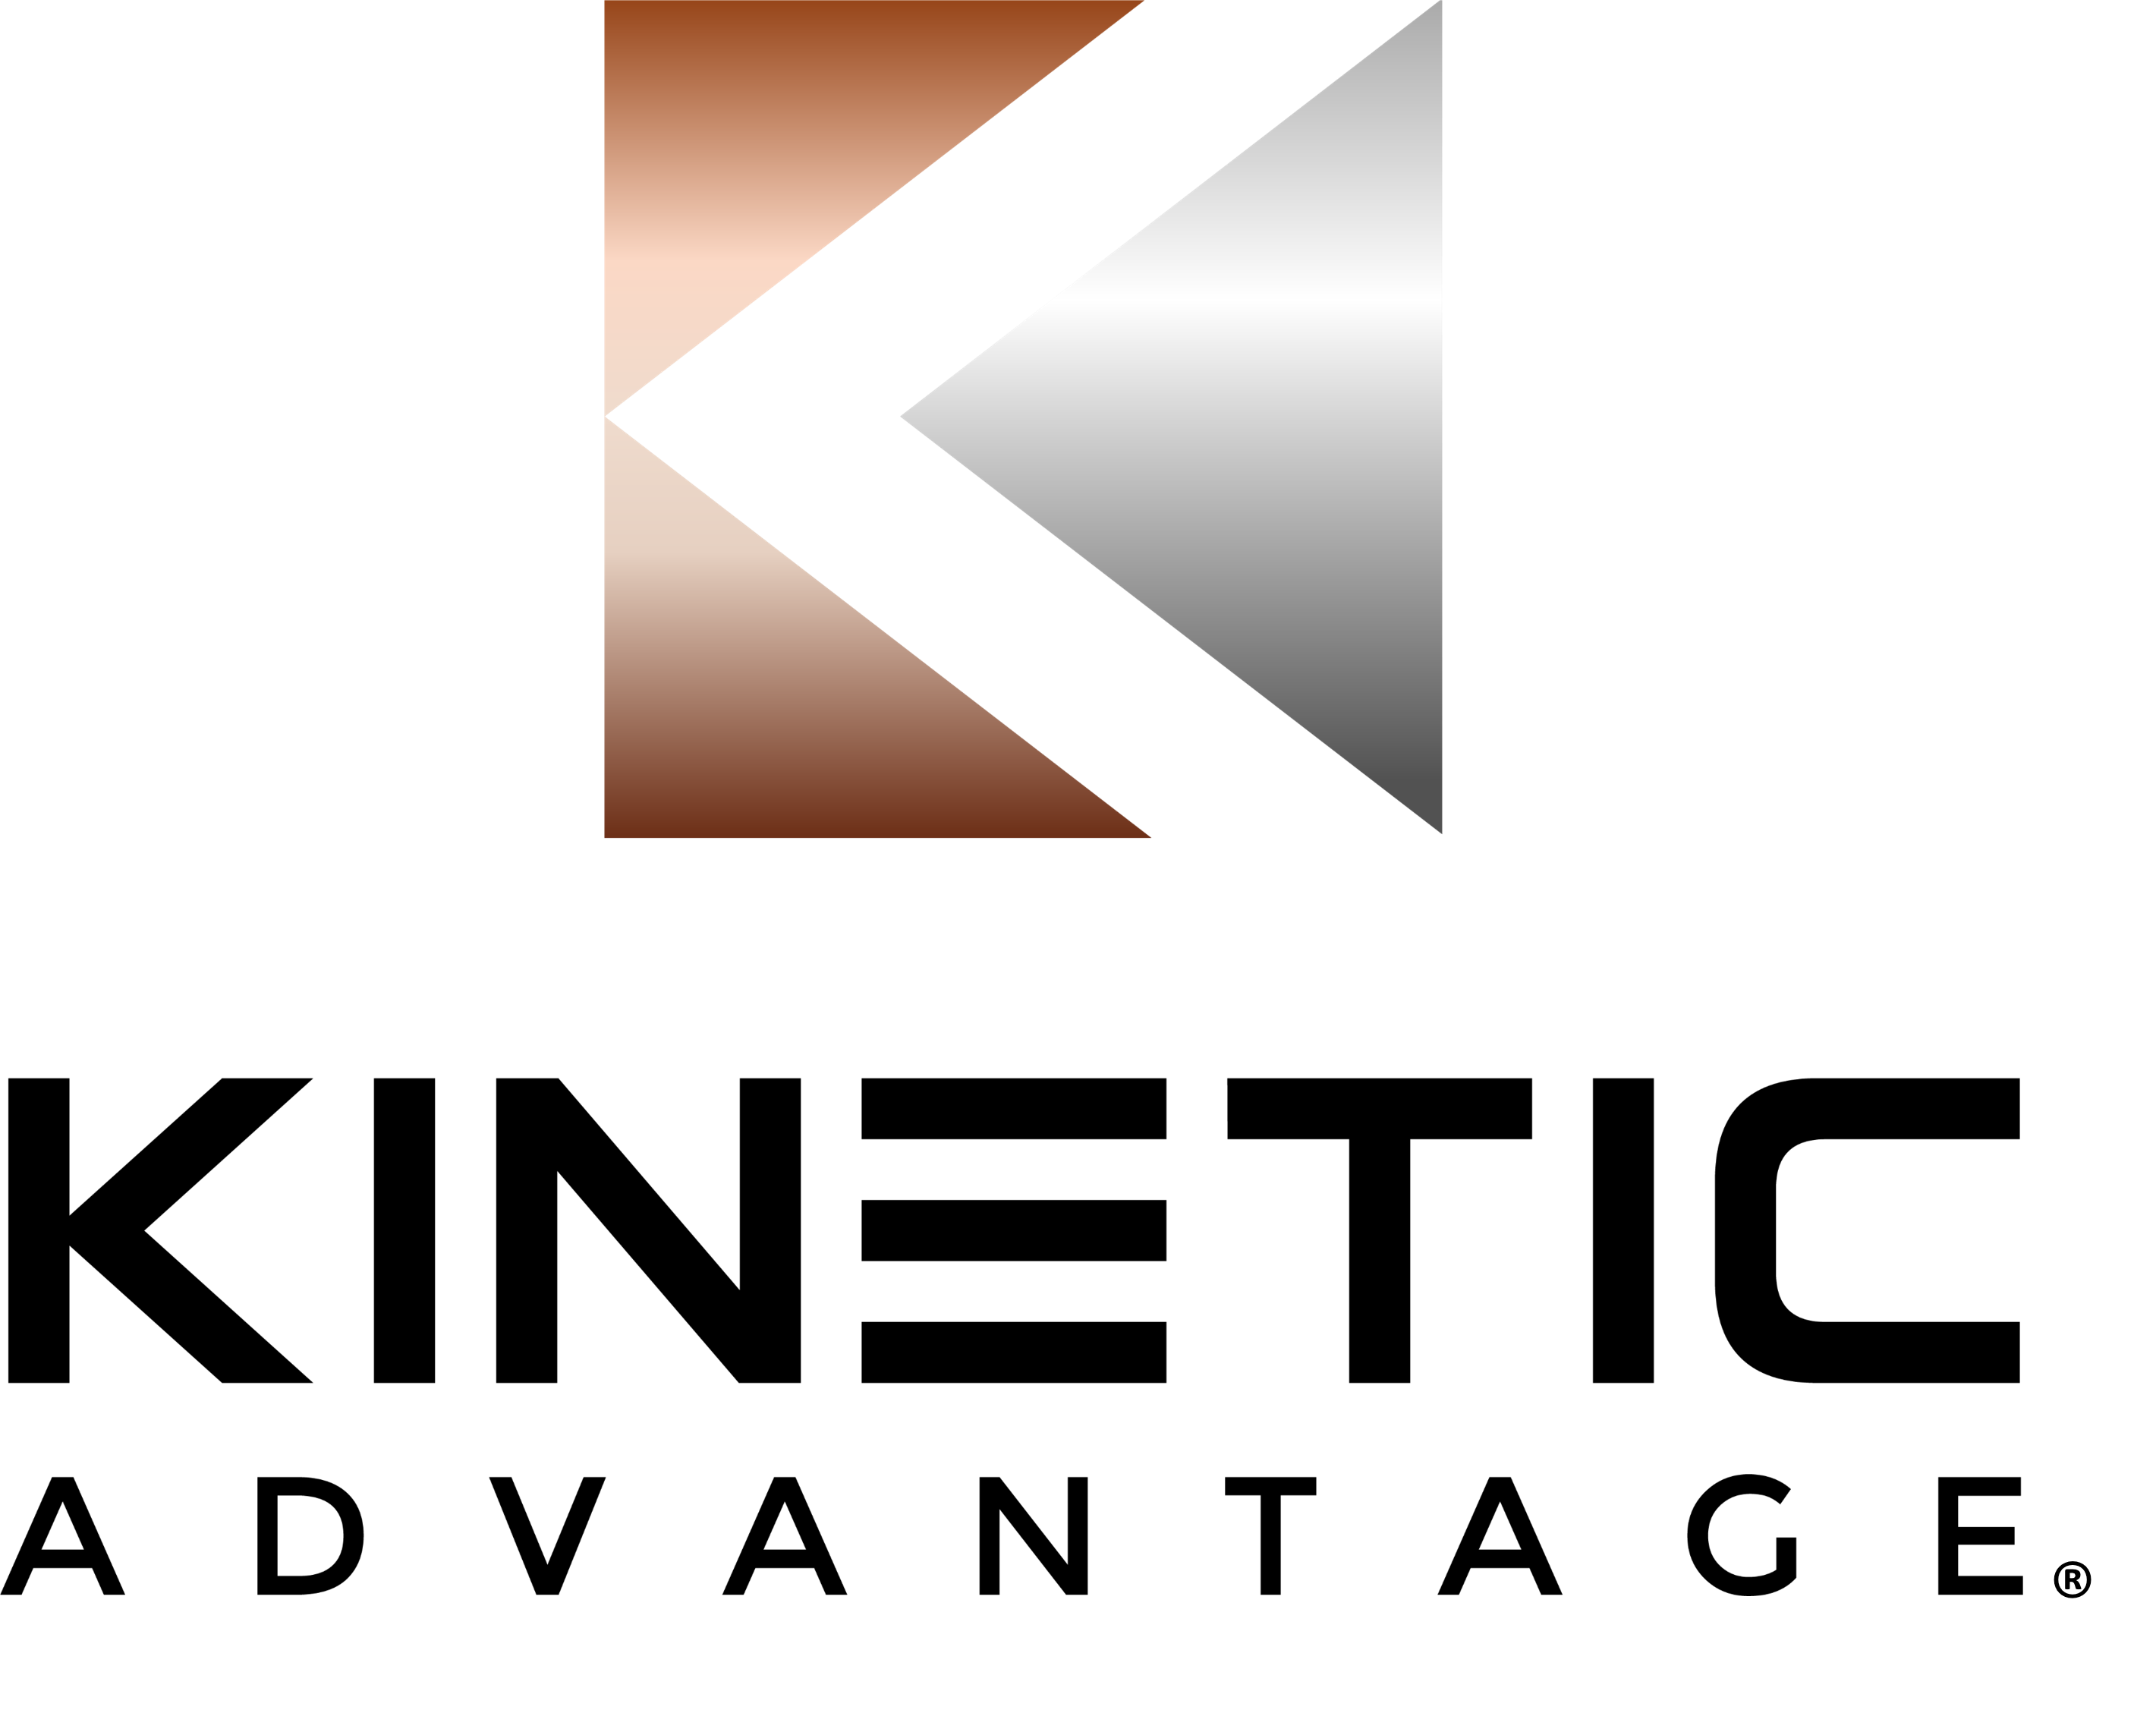 Kinetic Advantage logo